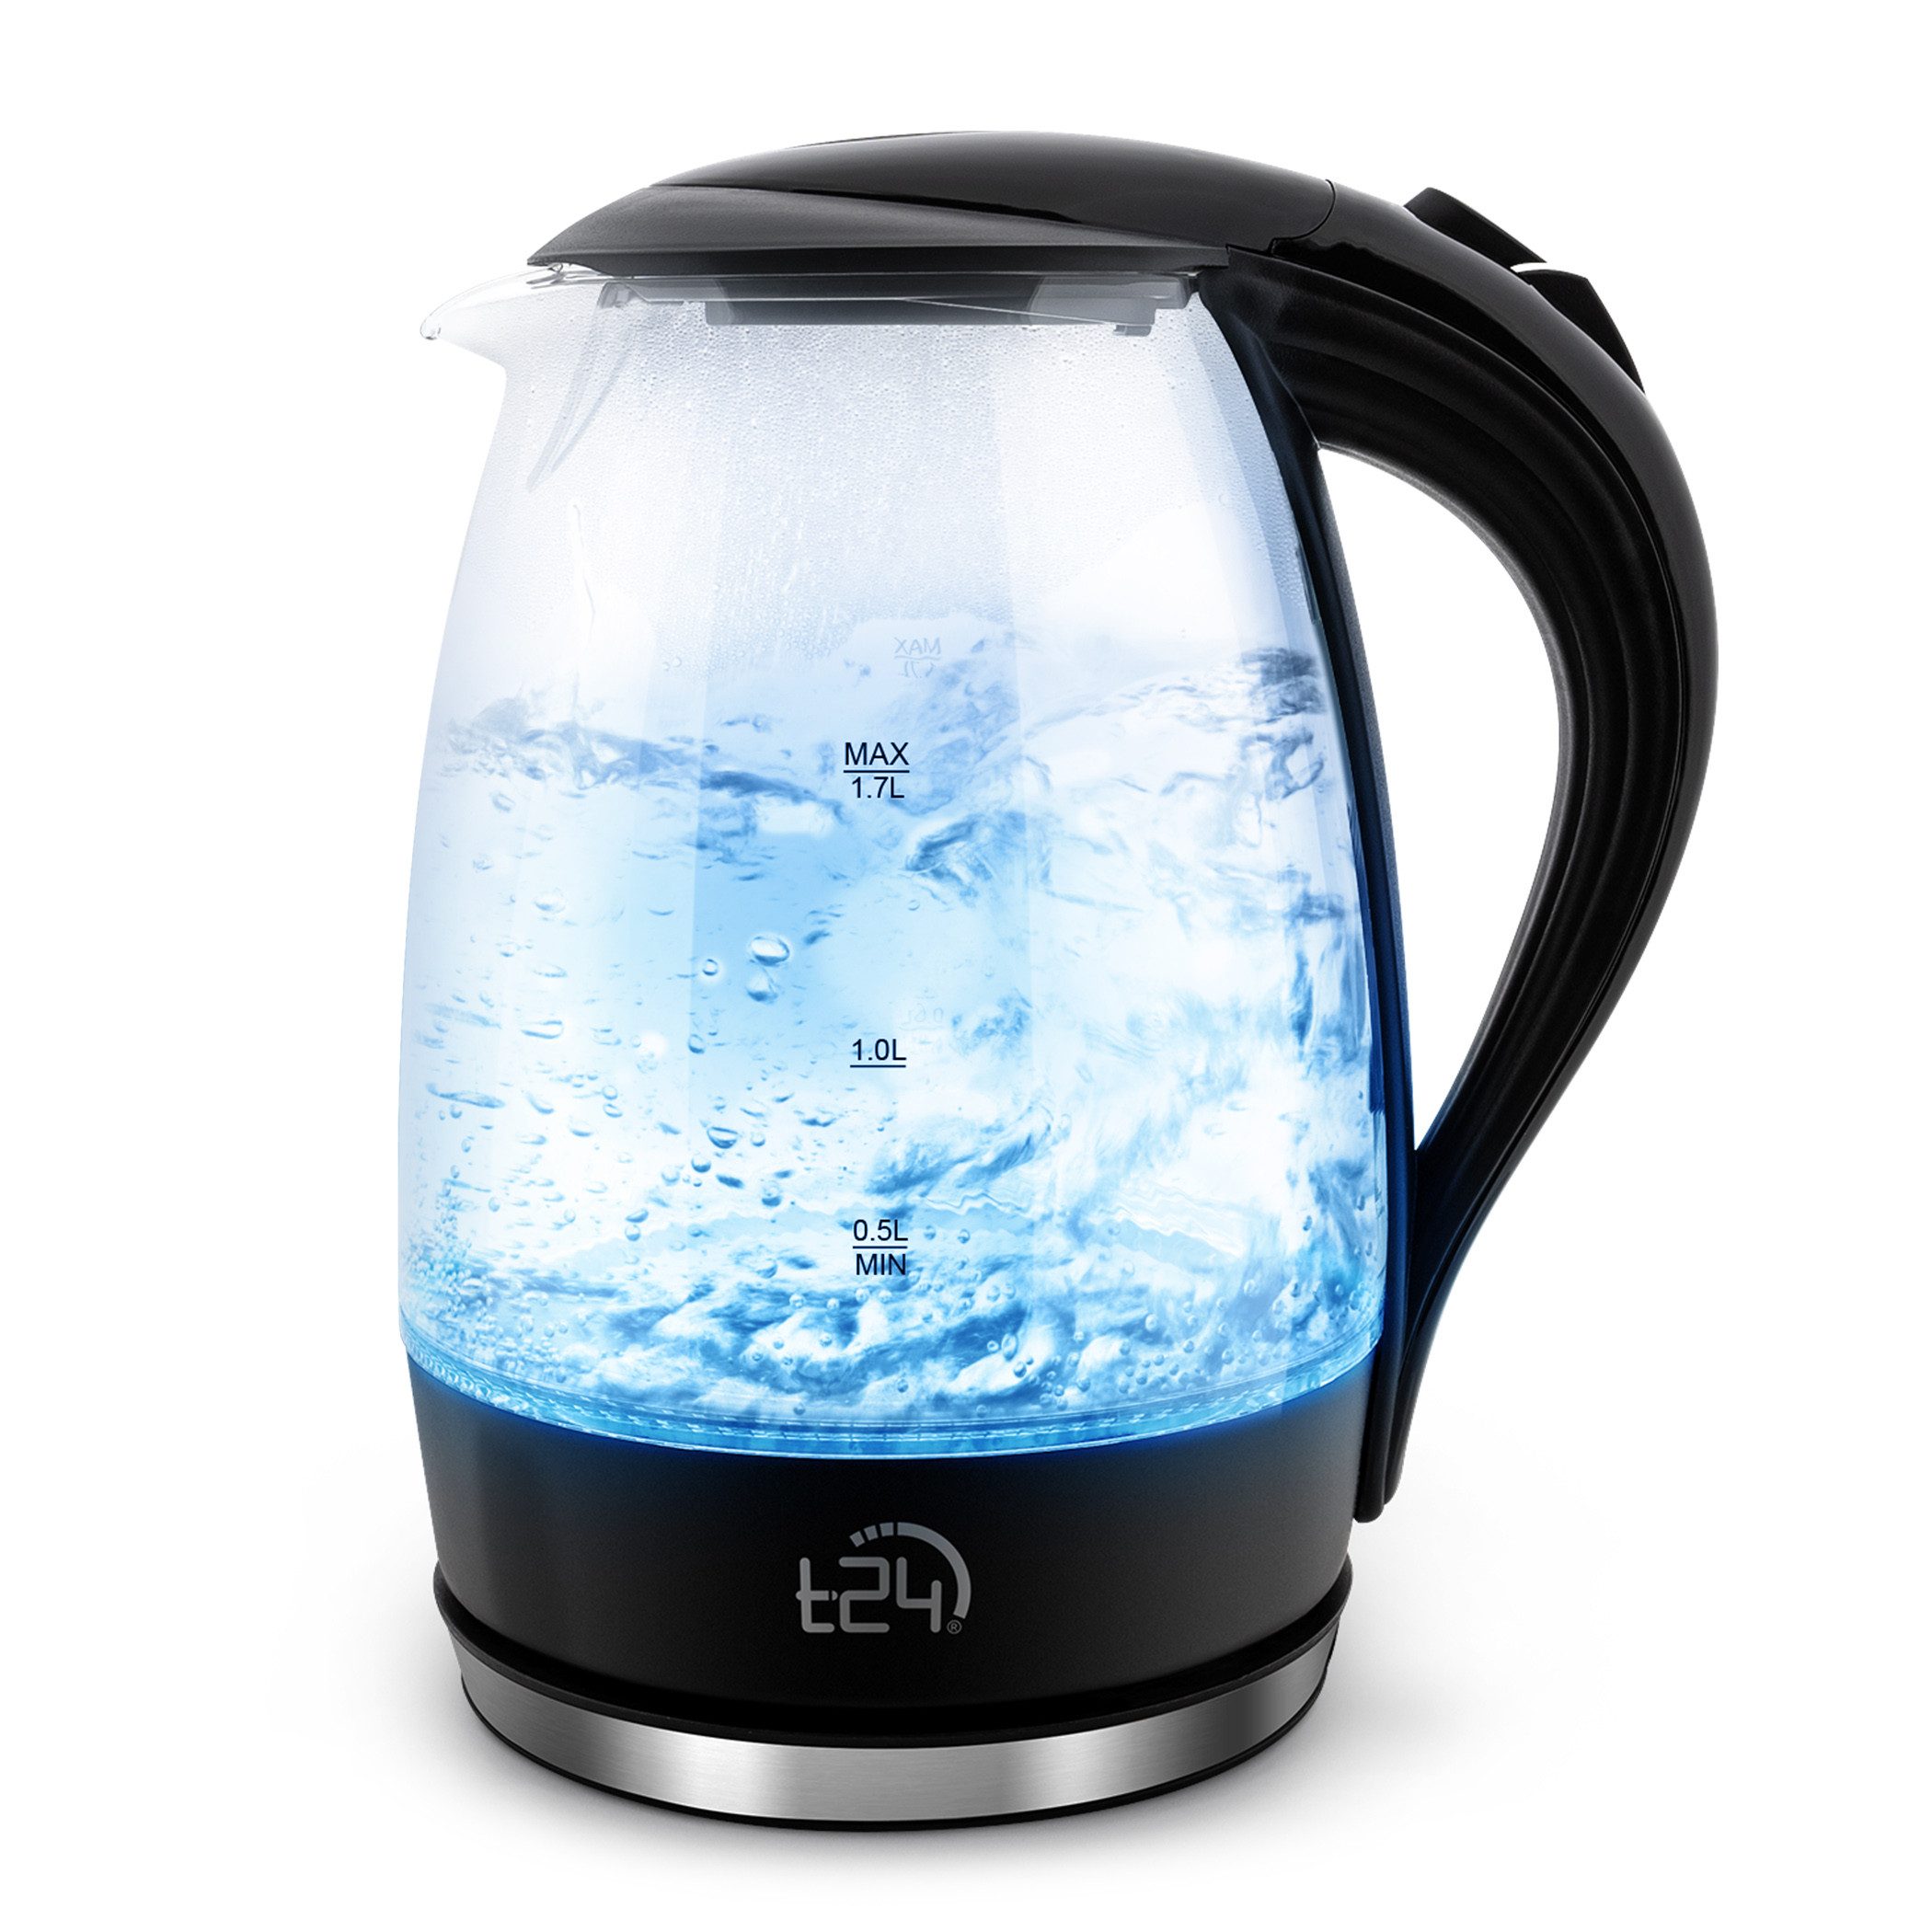 T24 Wasserkocher Glas Wasserkocher 1,7 L BPA frei THV Rheinland GS Zertifiziert, 1.7 l, 2200 W